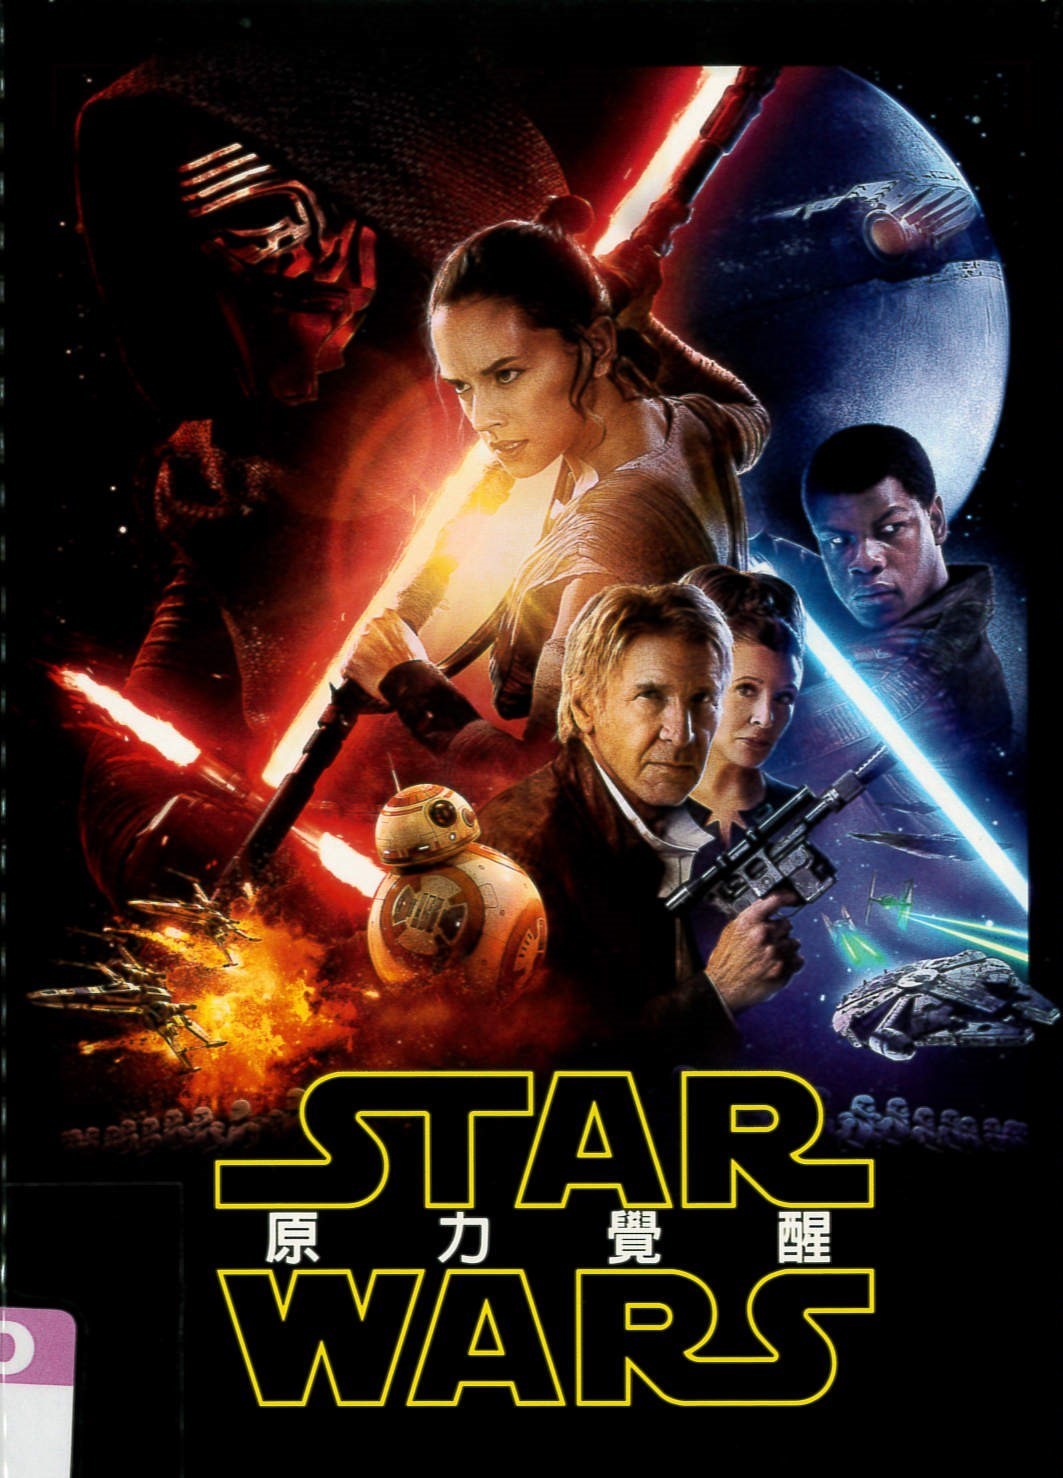 星際大戰 七部曲[普遍級:科幻] 原力覺醒 = Star wars : Episode VII - the force awakens /